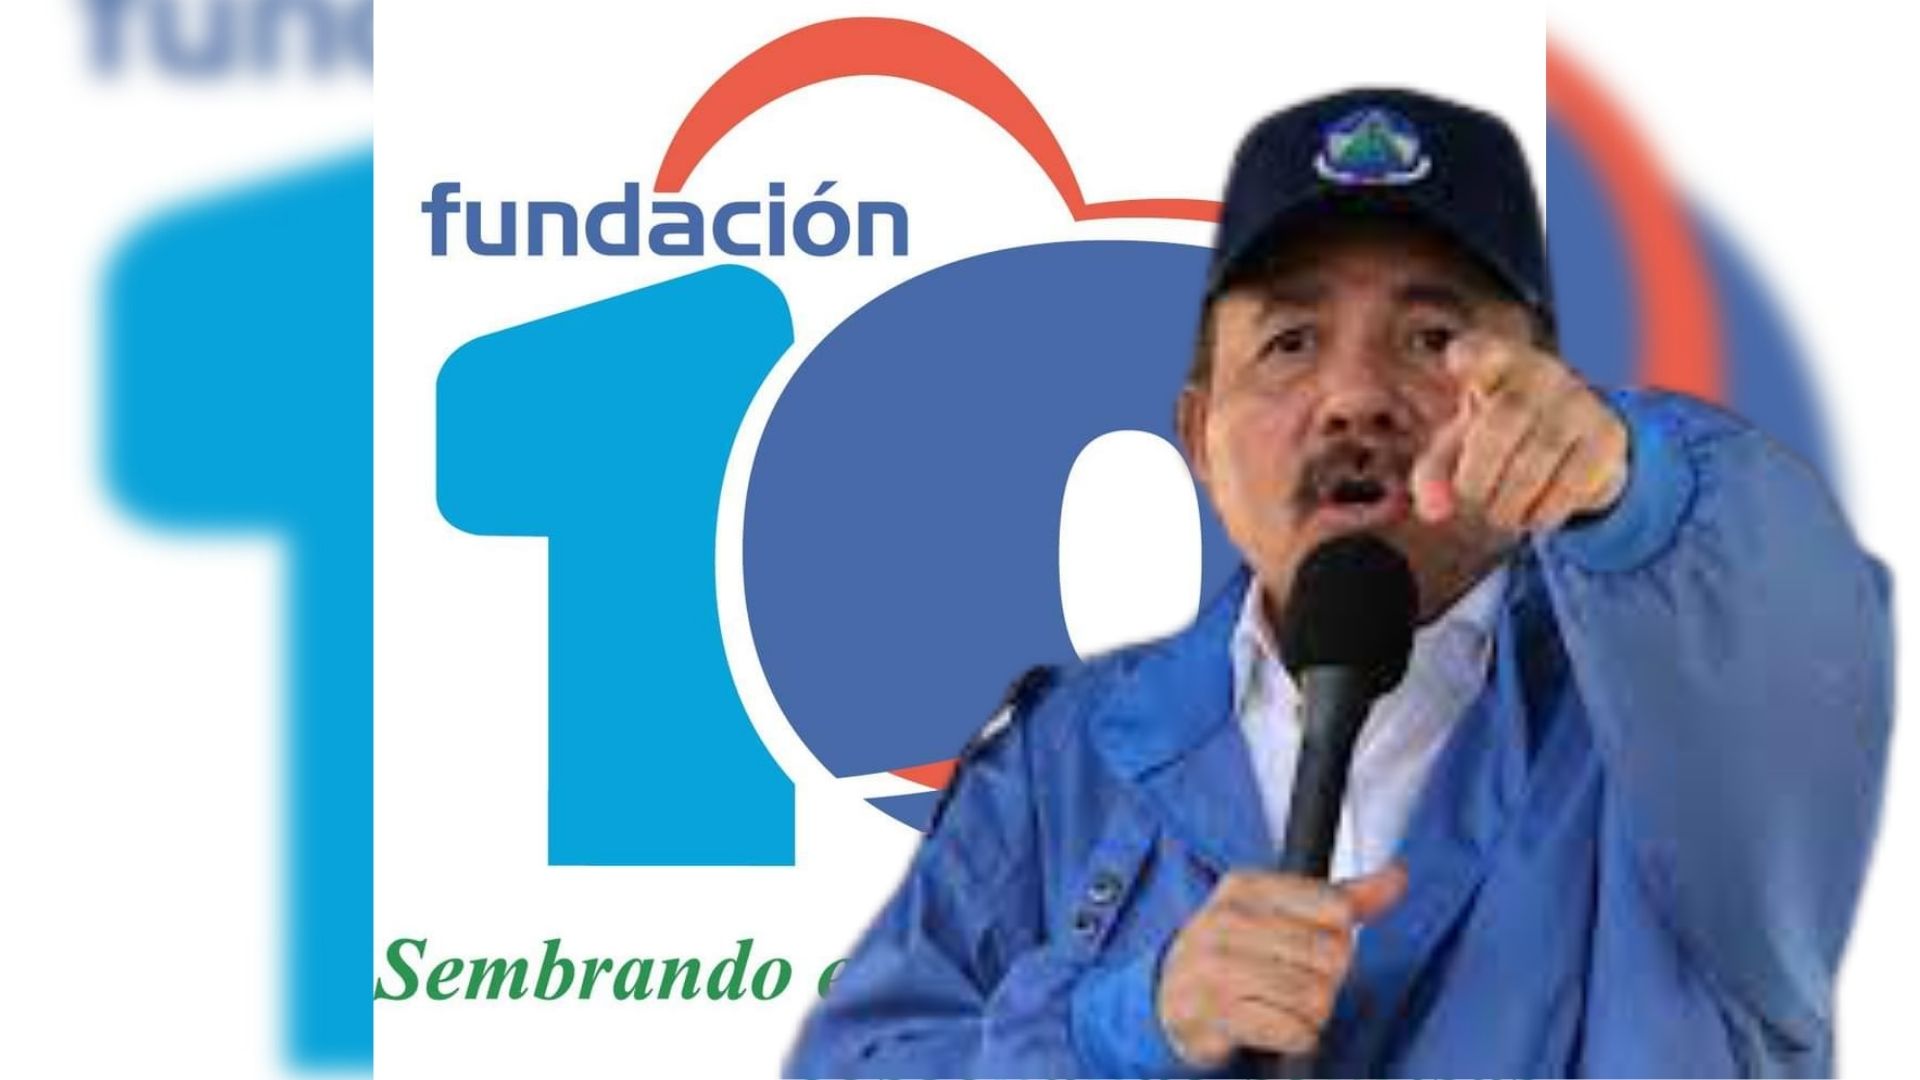 Régimen Ortega «aniquilará» a Fundación 10 y a otras 24 oenegé